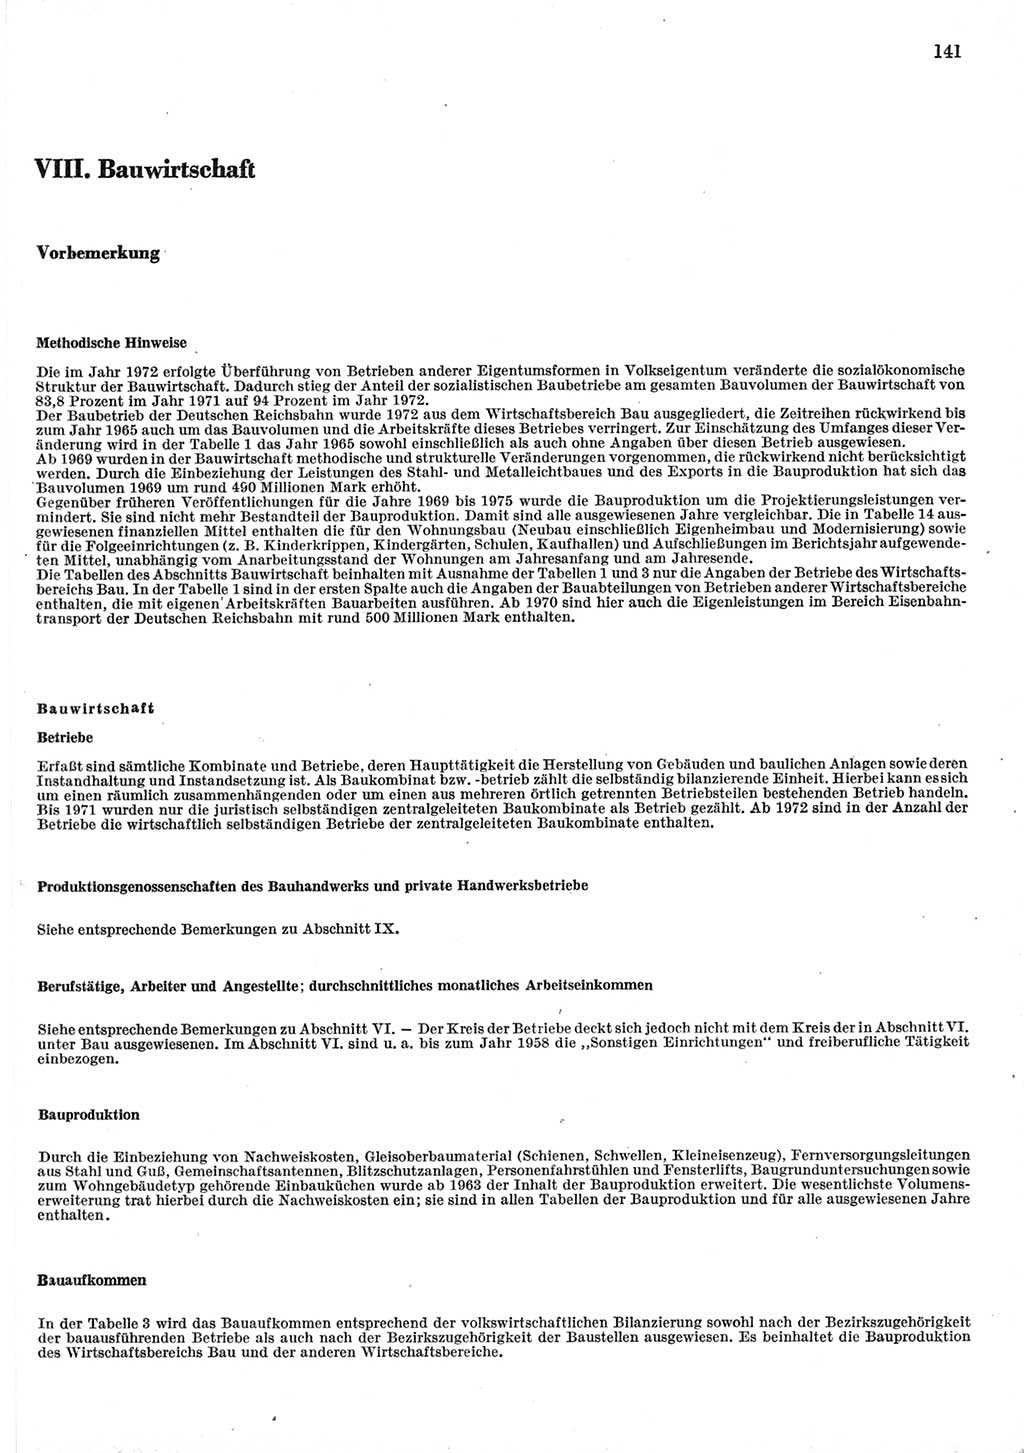 Statistisches Jahrbuch der Deutschen Demokratischen Republik (DDR) 1977, Seite 141 (Stat. Jb. DDR 1977, S. 141)